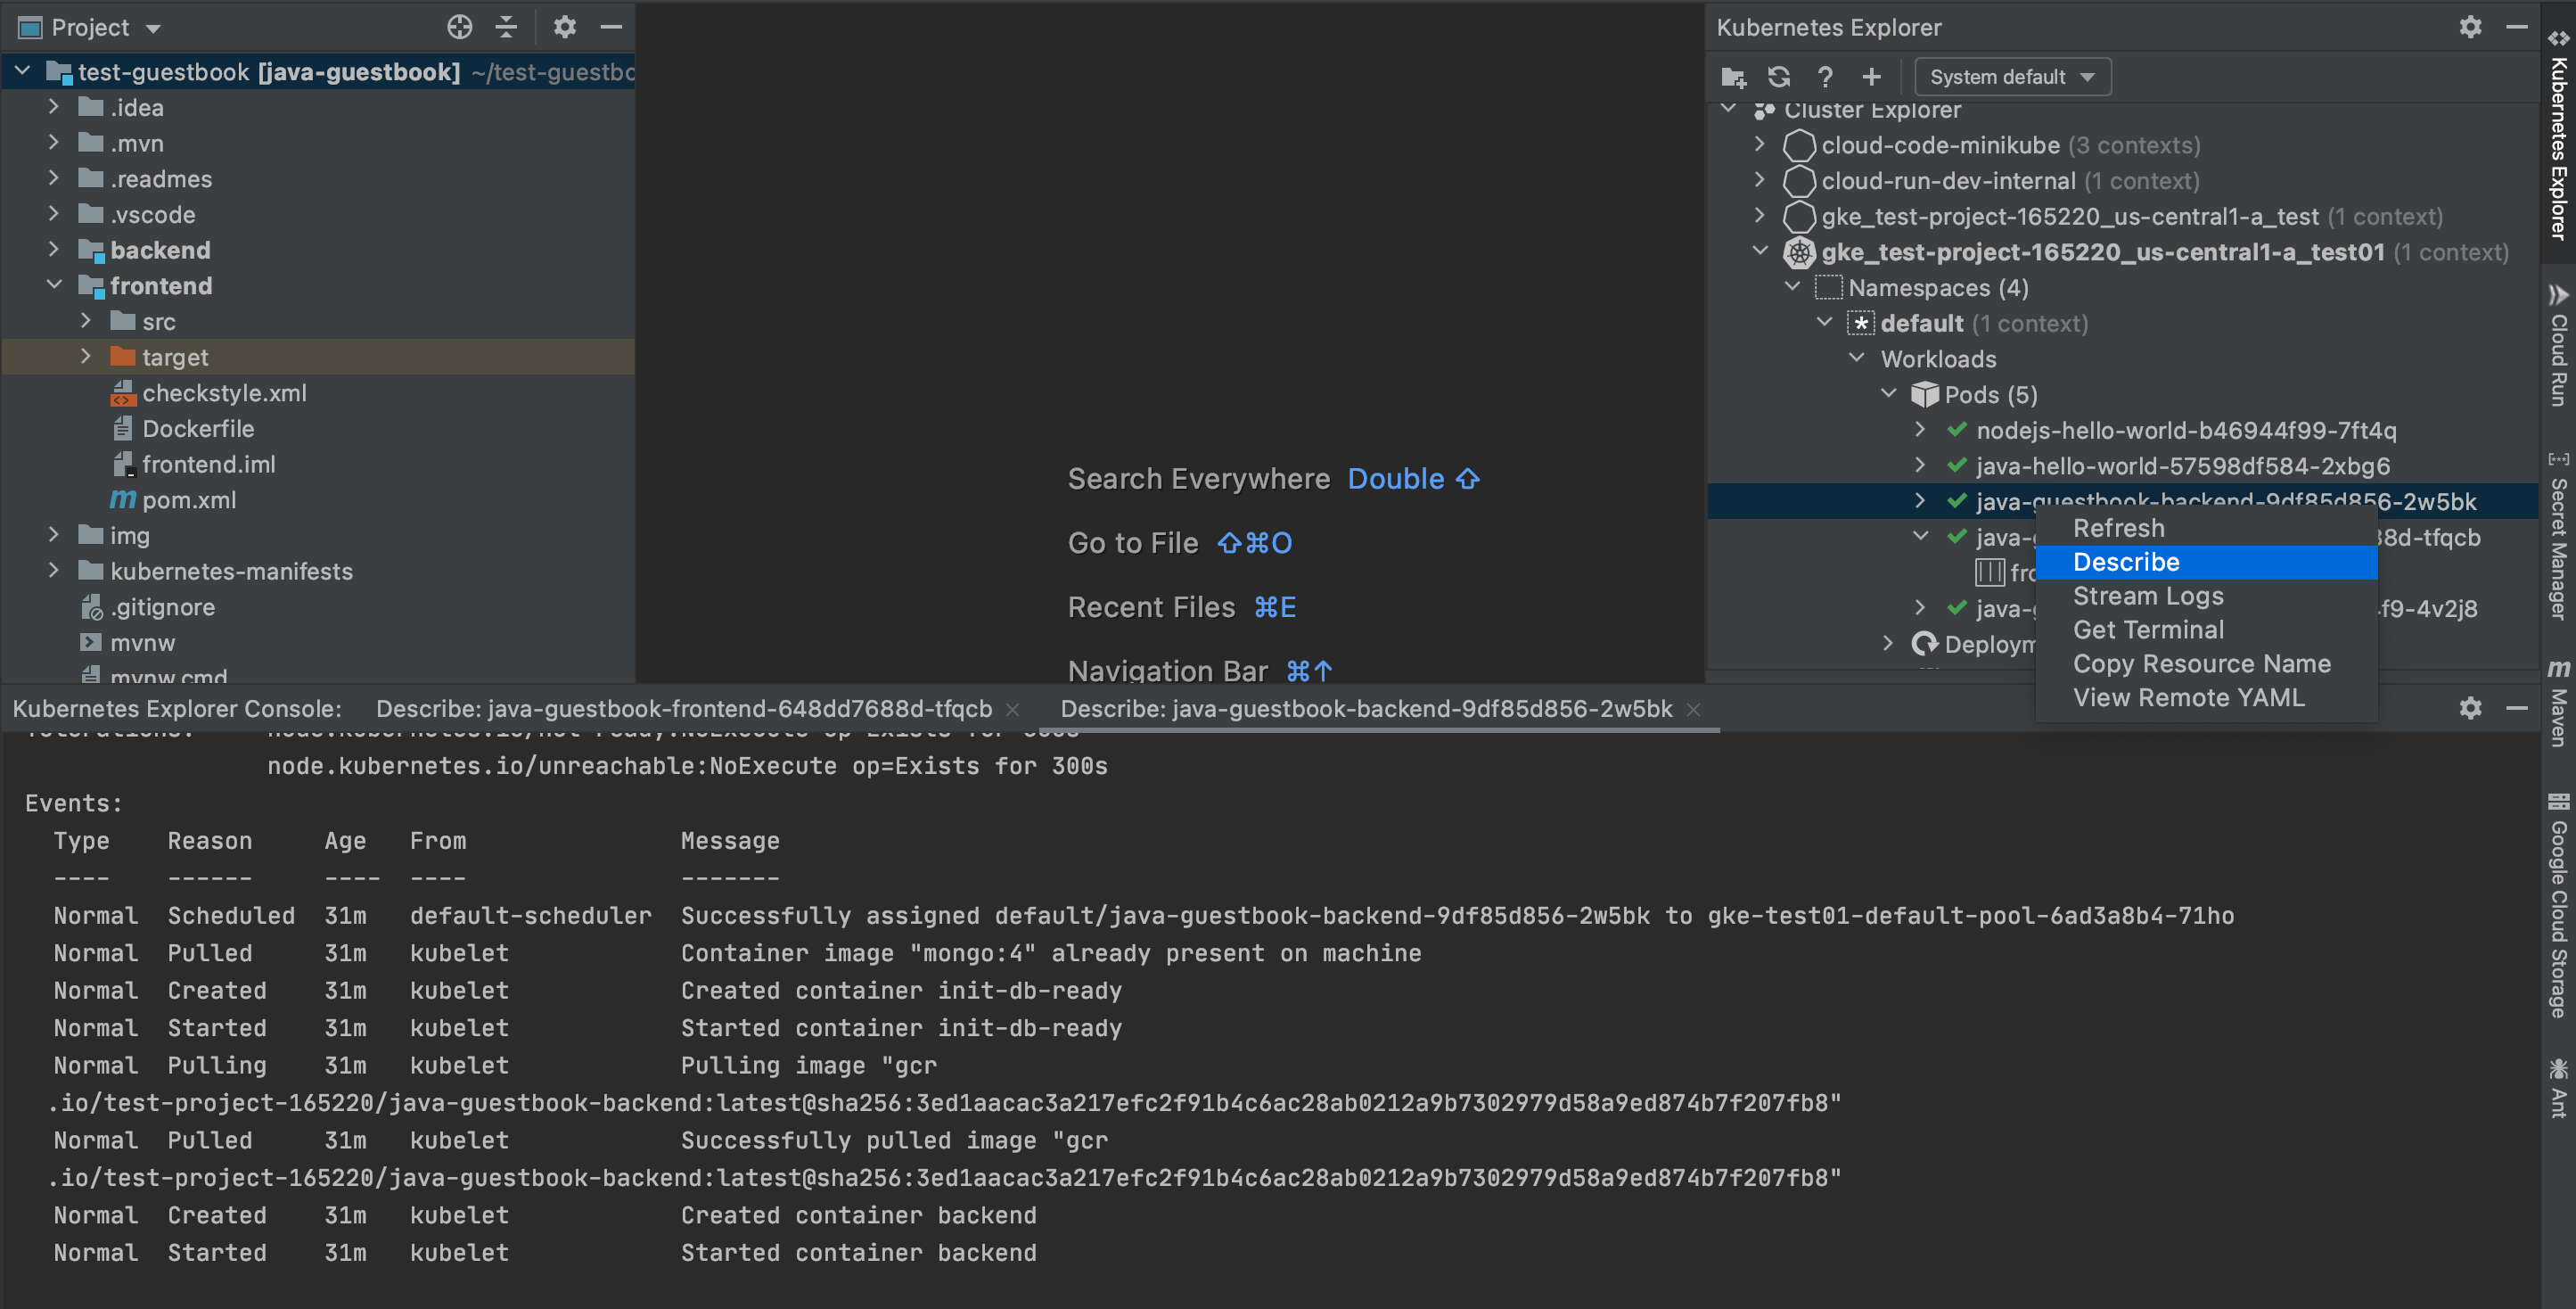 Opção "Descrever" disponível ao clicar com o botão direito do mouse em um recurso apropriado no painel do Kubernetes Explorer